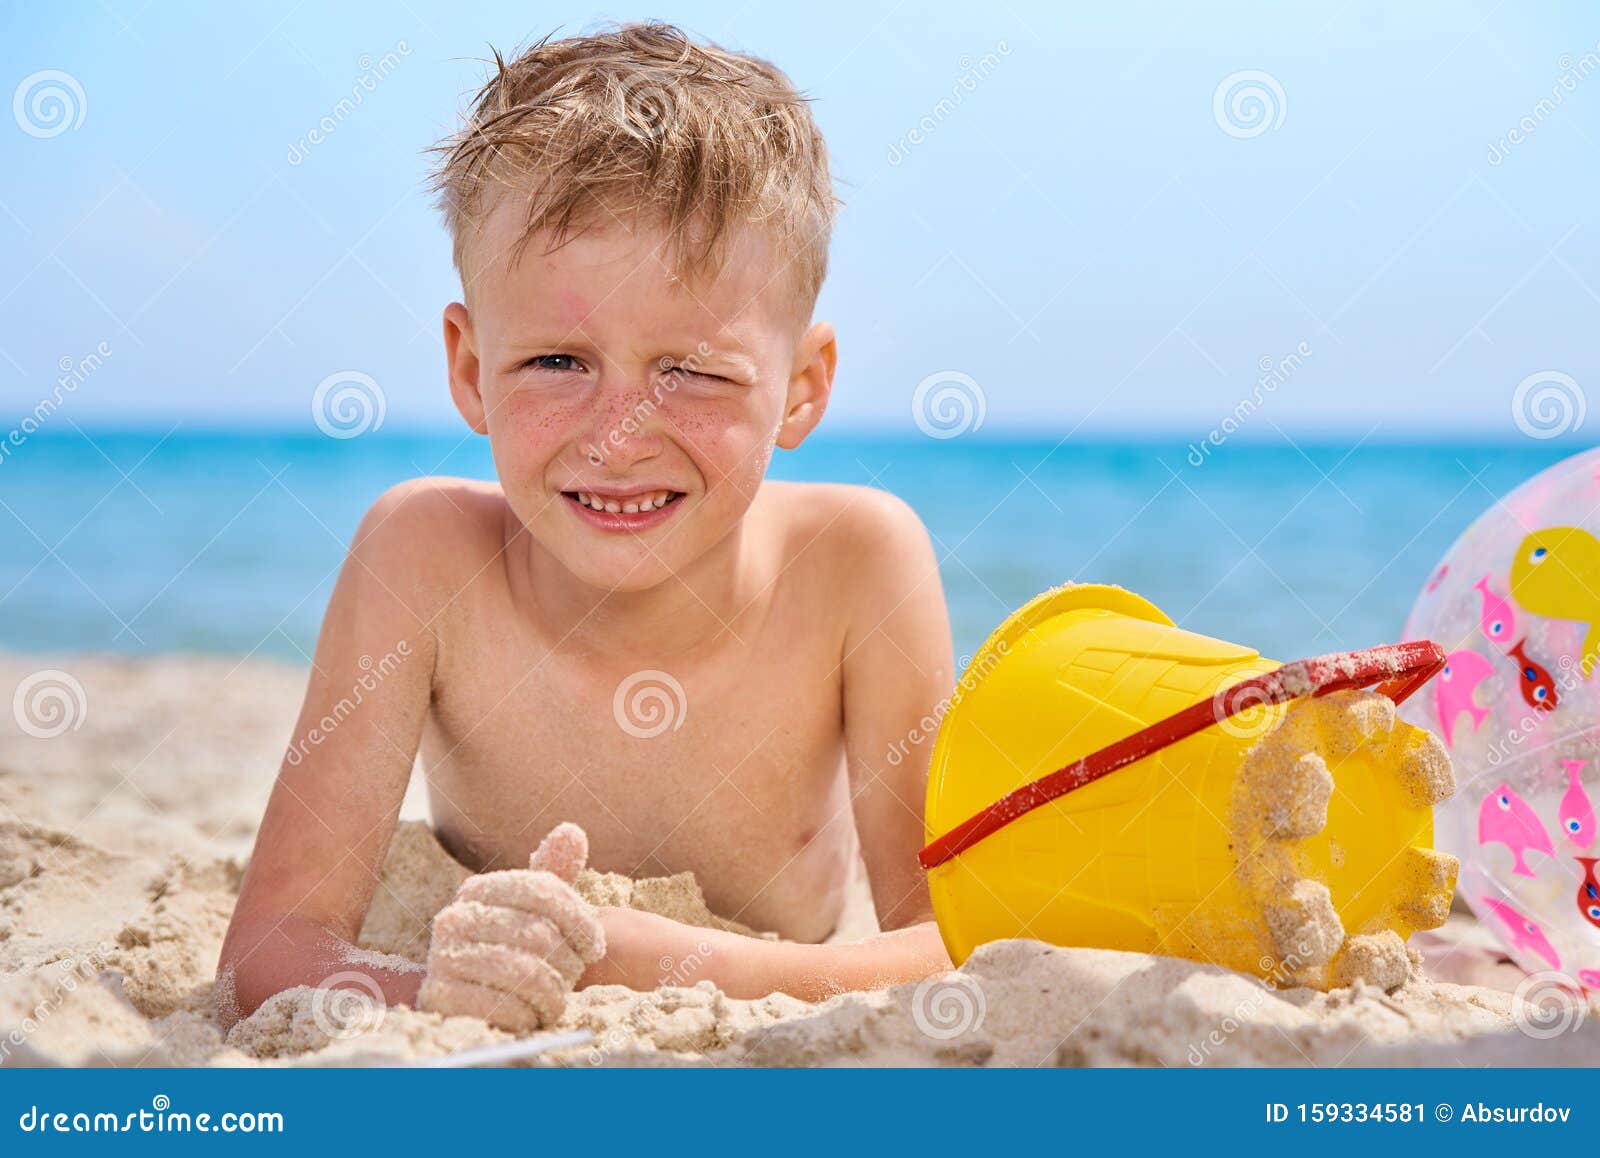 порно маленькие мальчики пляж фото 29